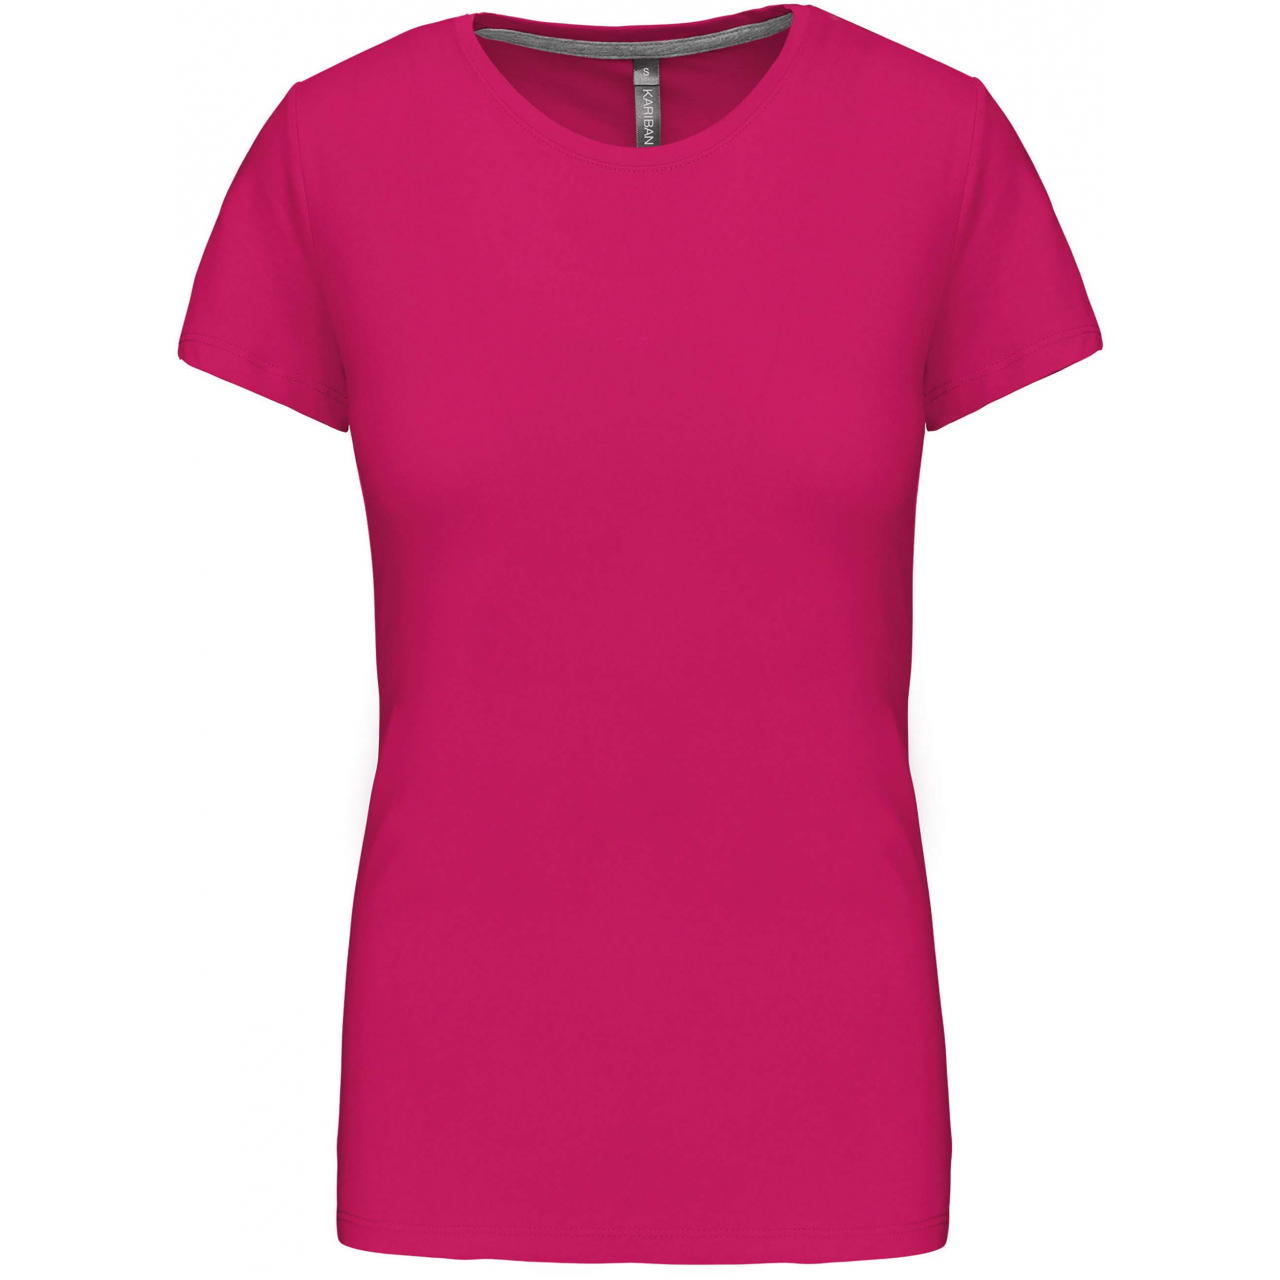 Dámské tričko Kariban s krátkým rukávem - růžové, 3XL